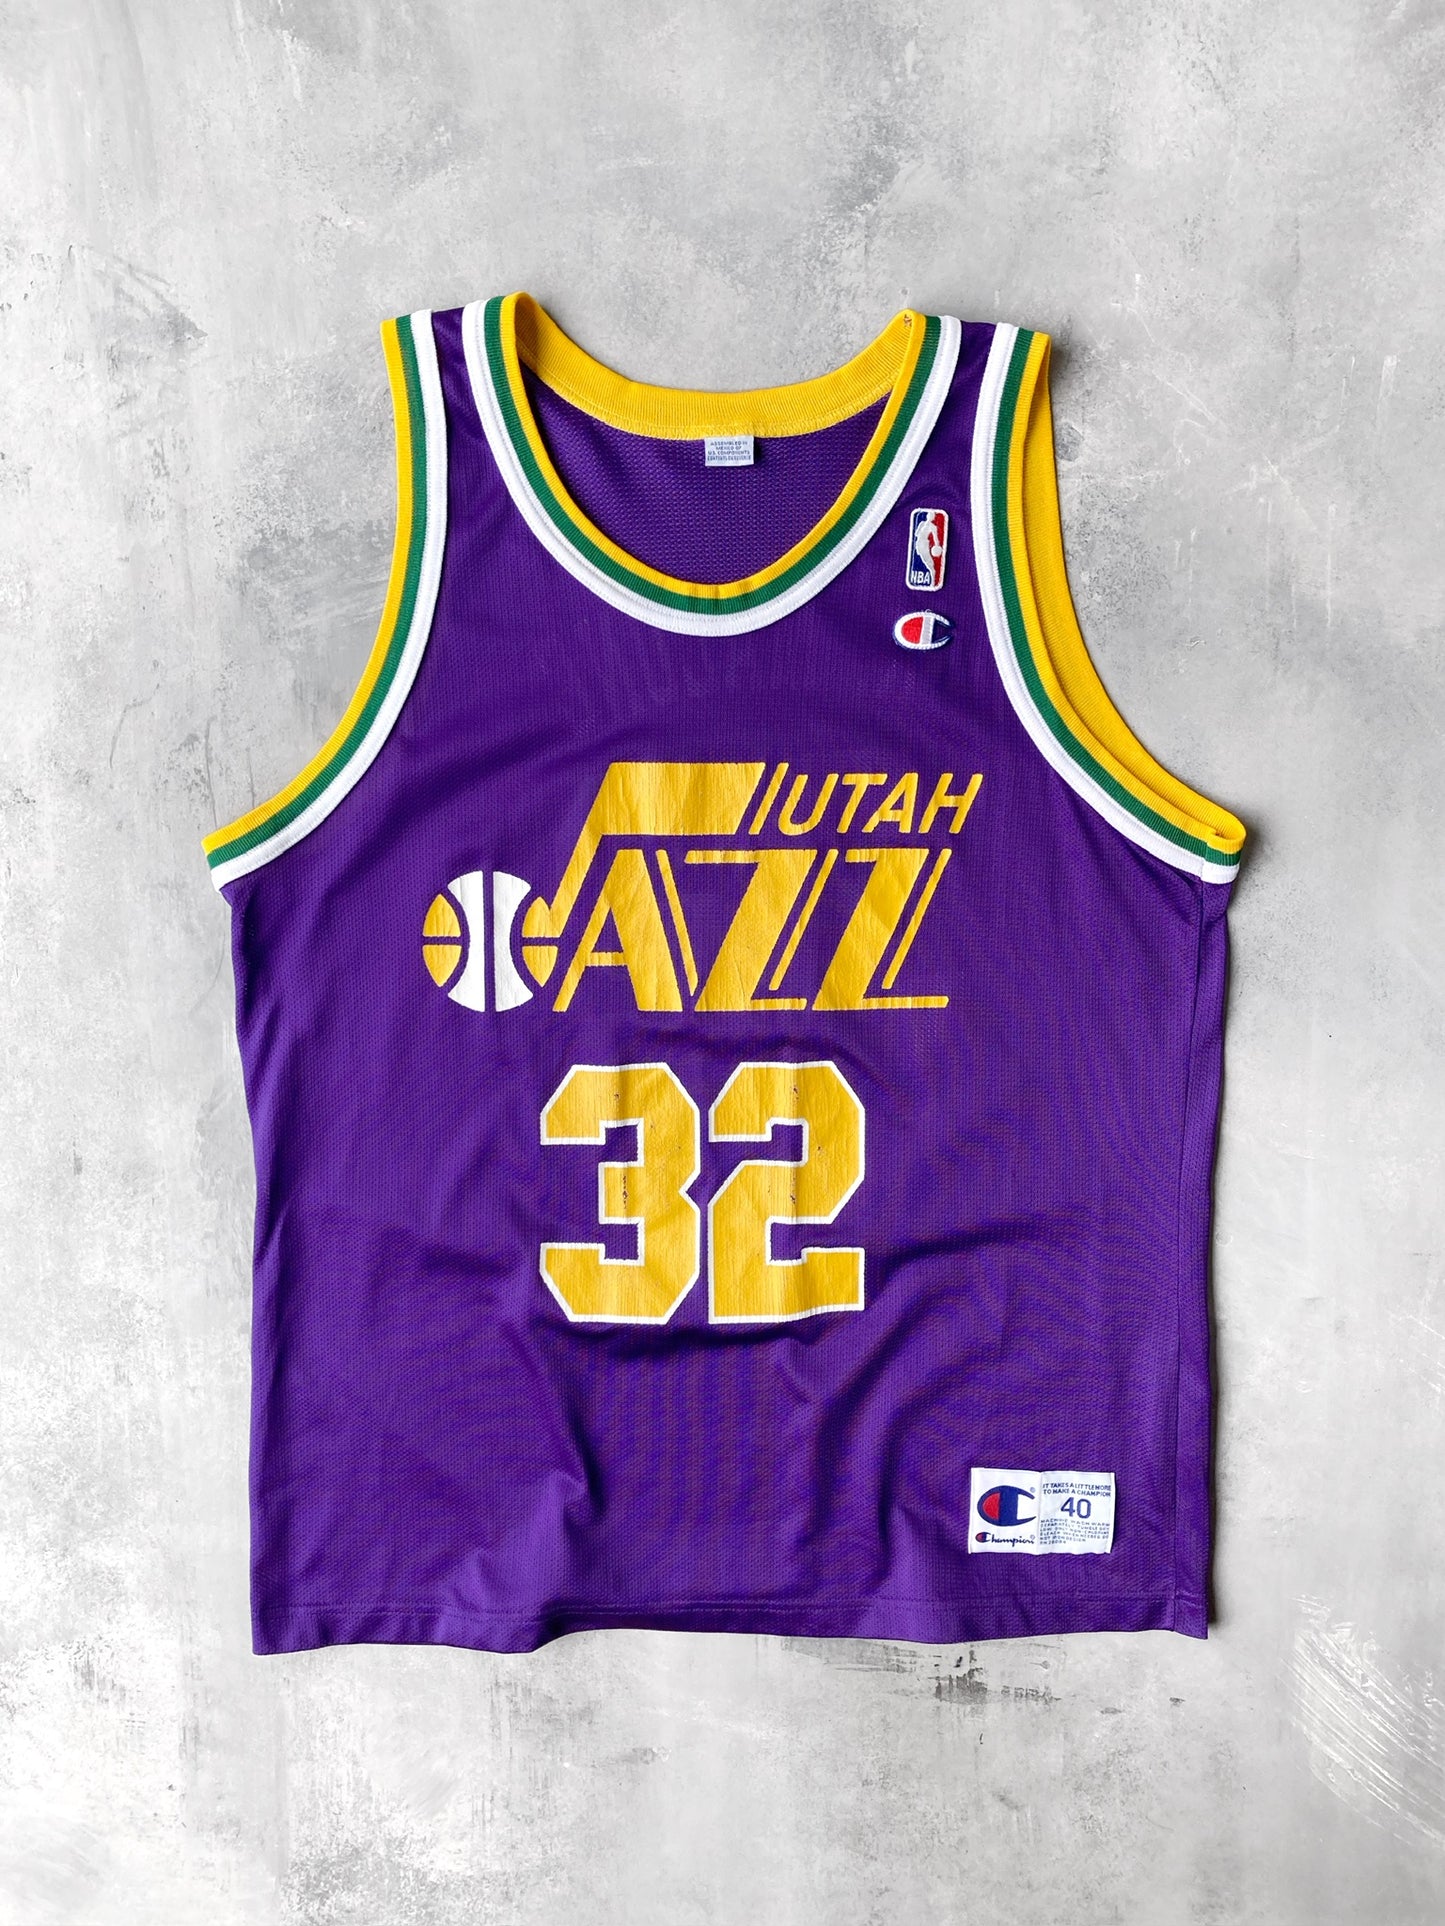 Utah Jazz Jersey 90's - Large